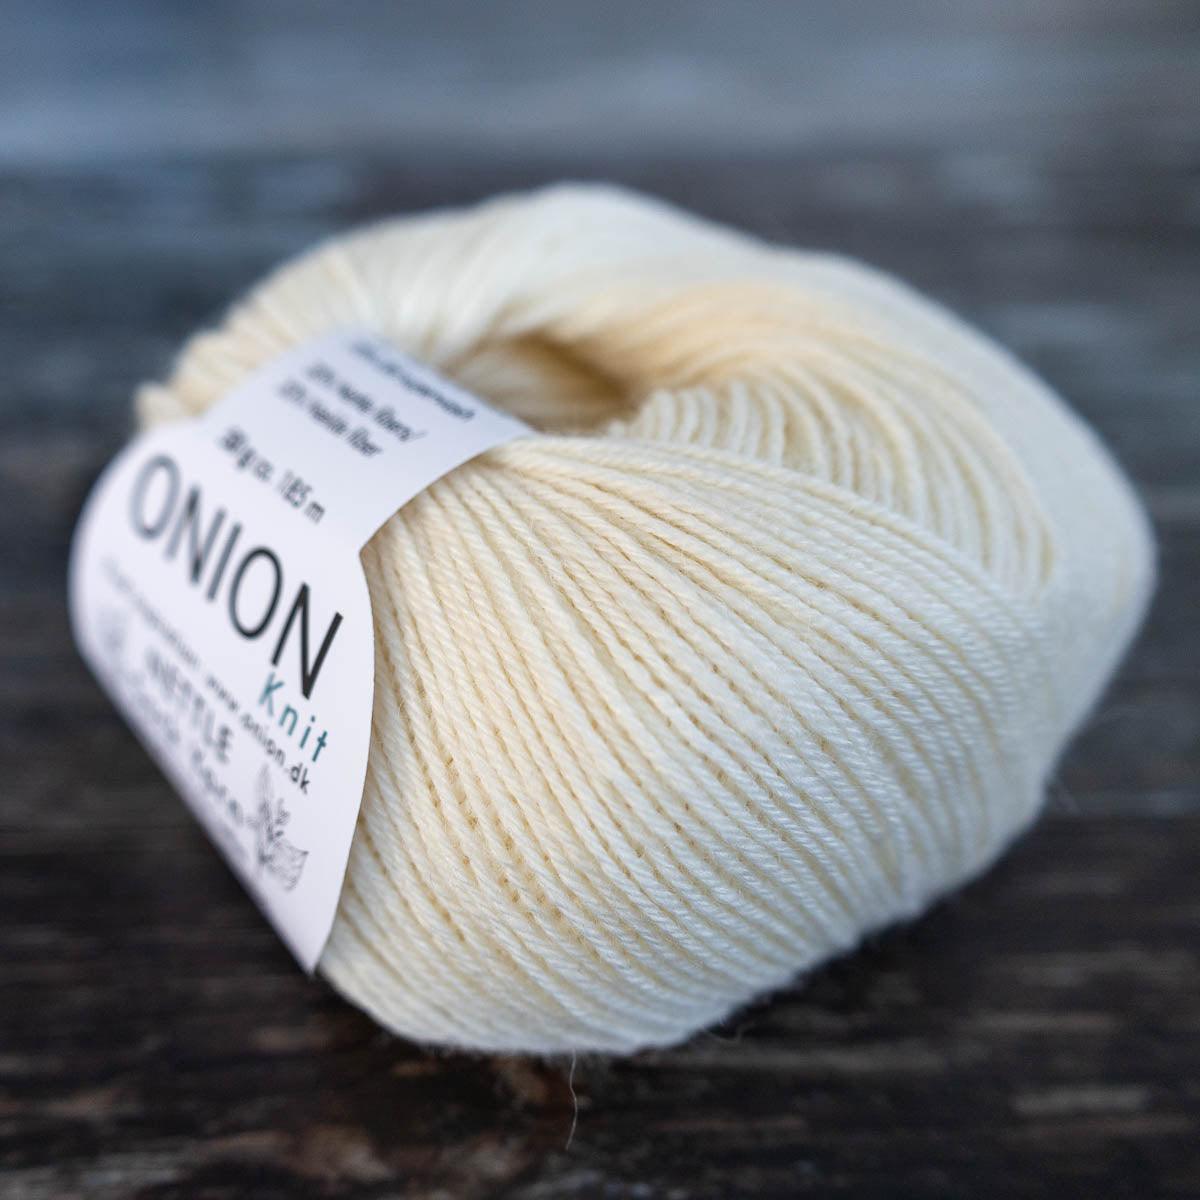 Onion Onion Nettle Sock Yarn -  - Yarn